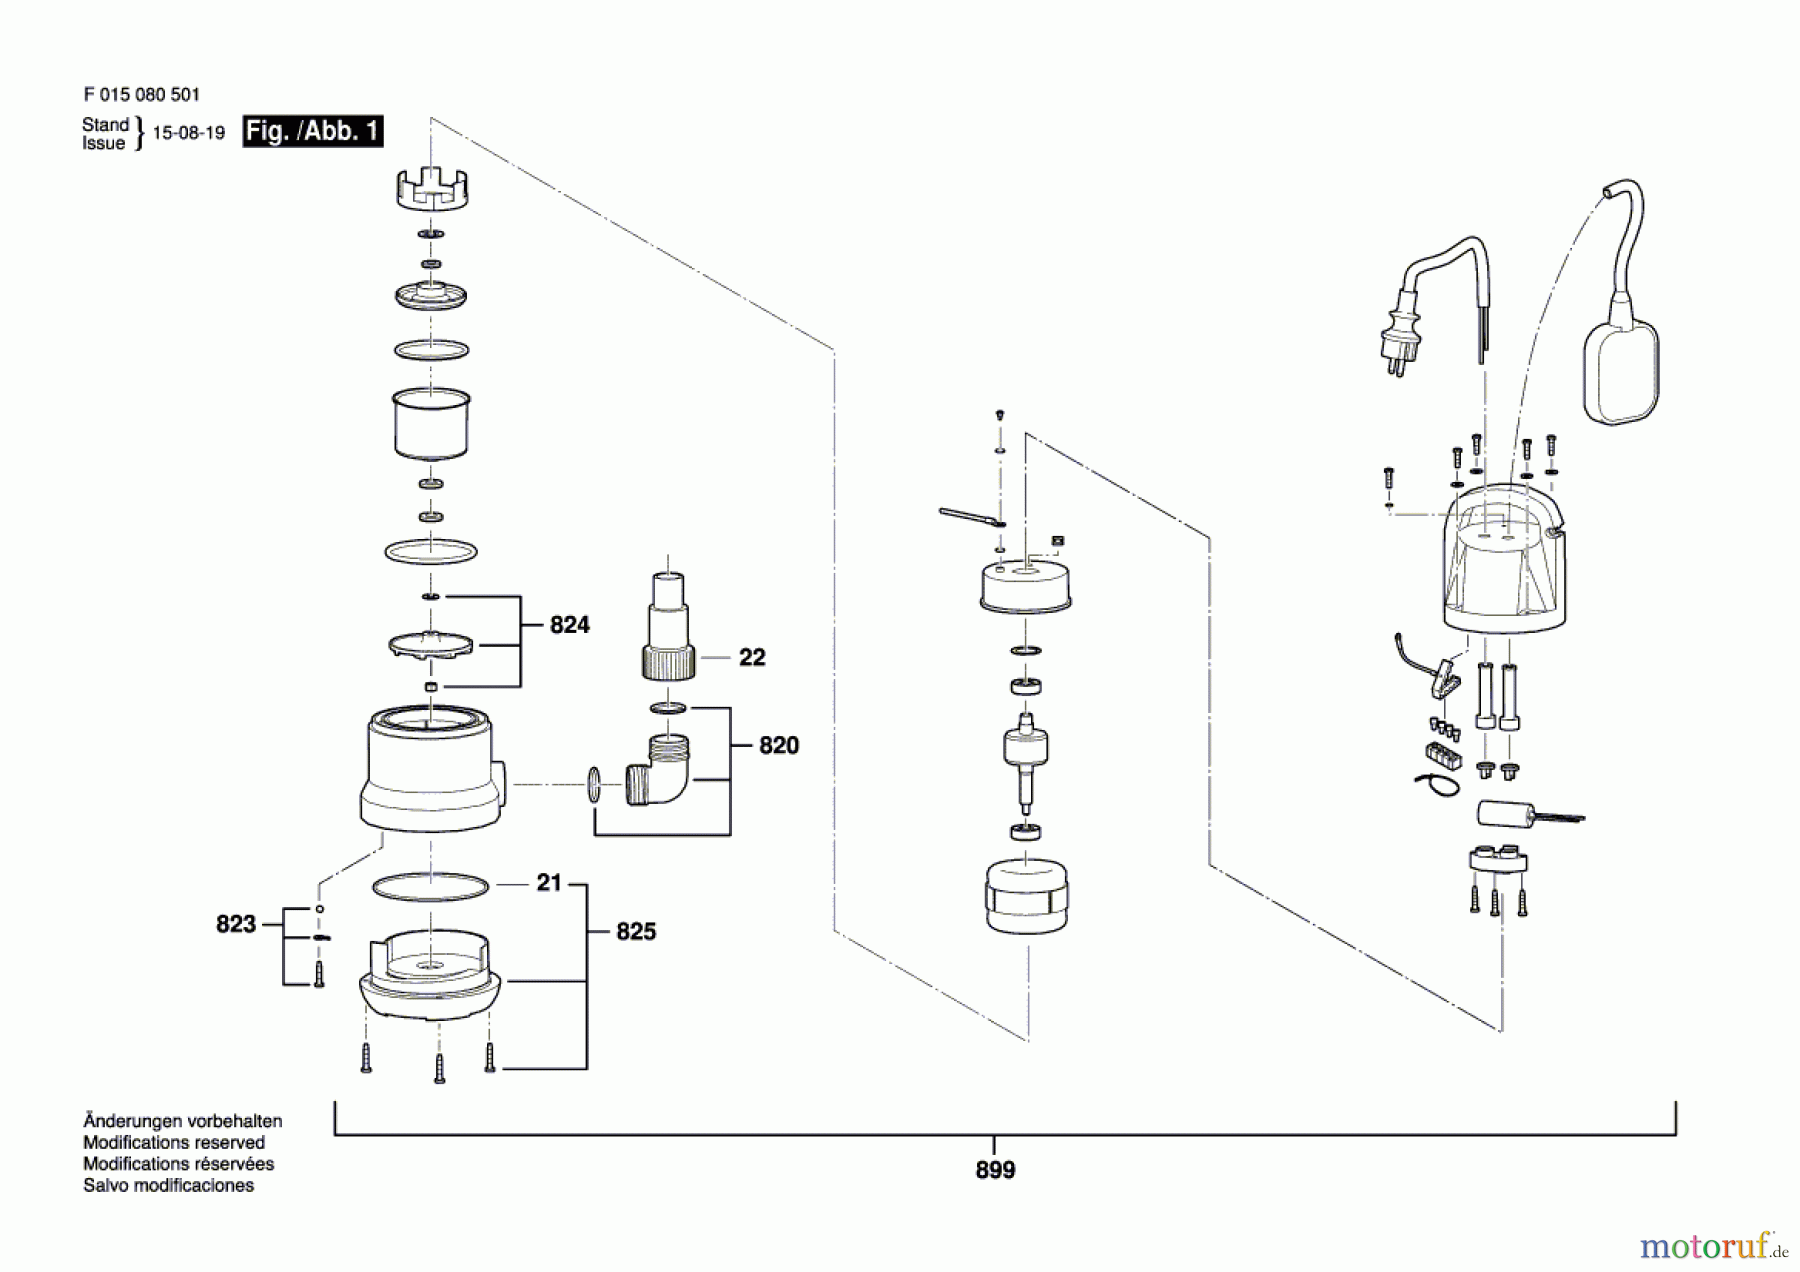  Bosch Gartengeräte Elektro-Wasserpumpe 0805 Seite 1